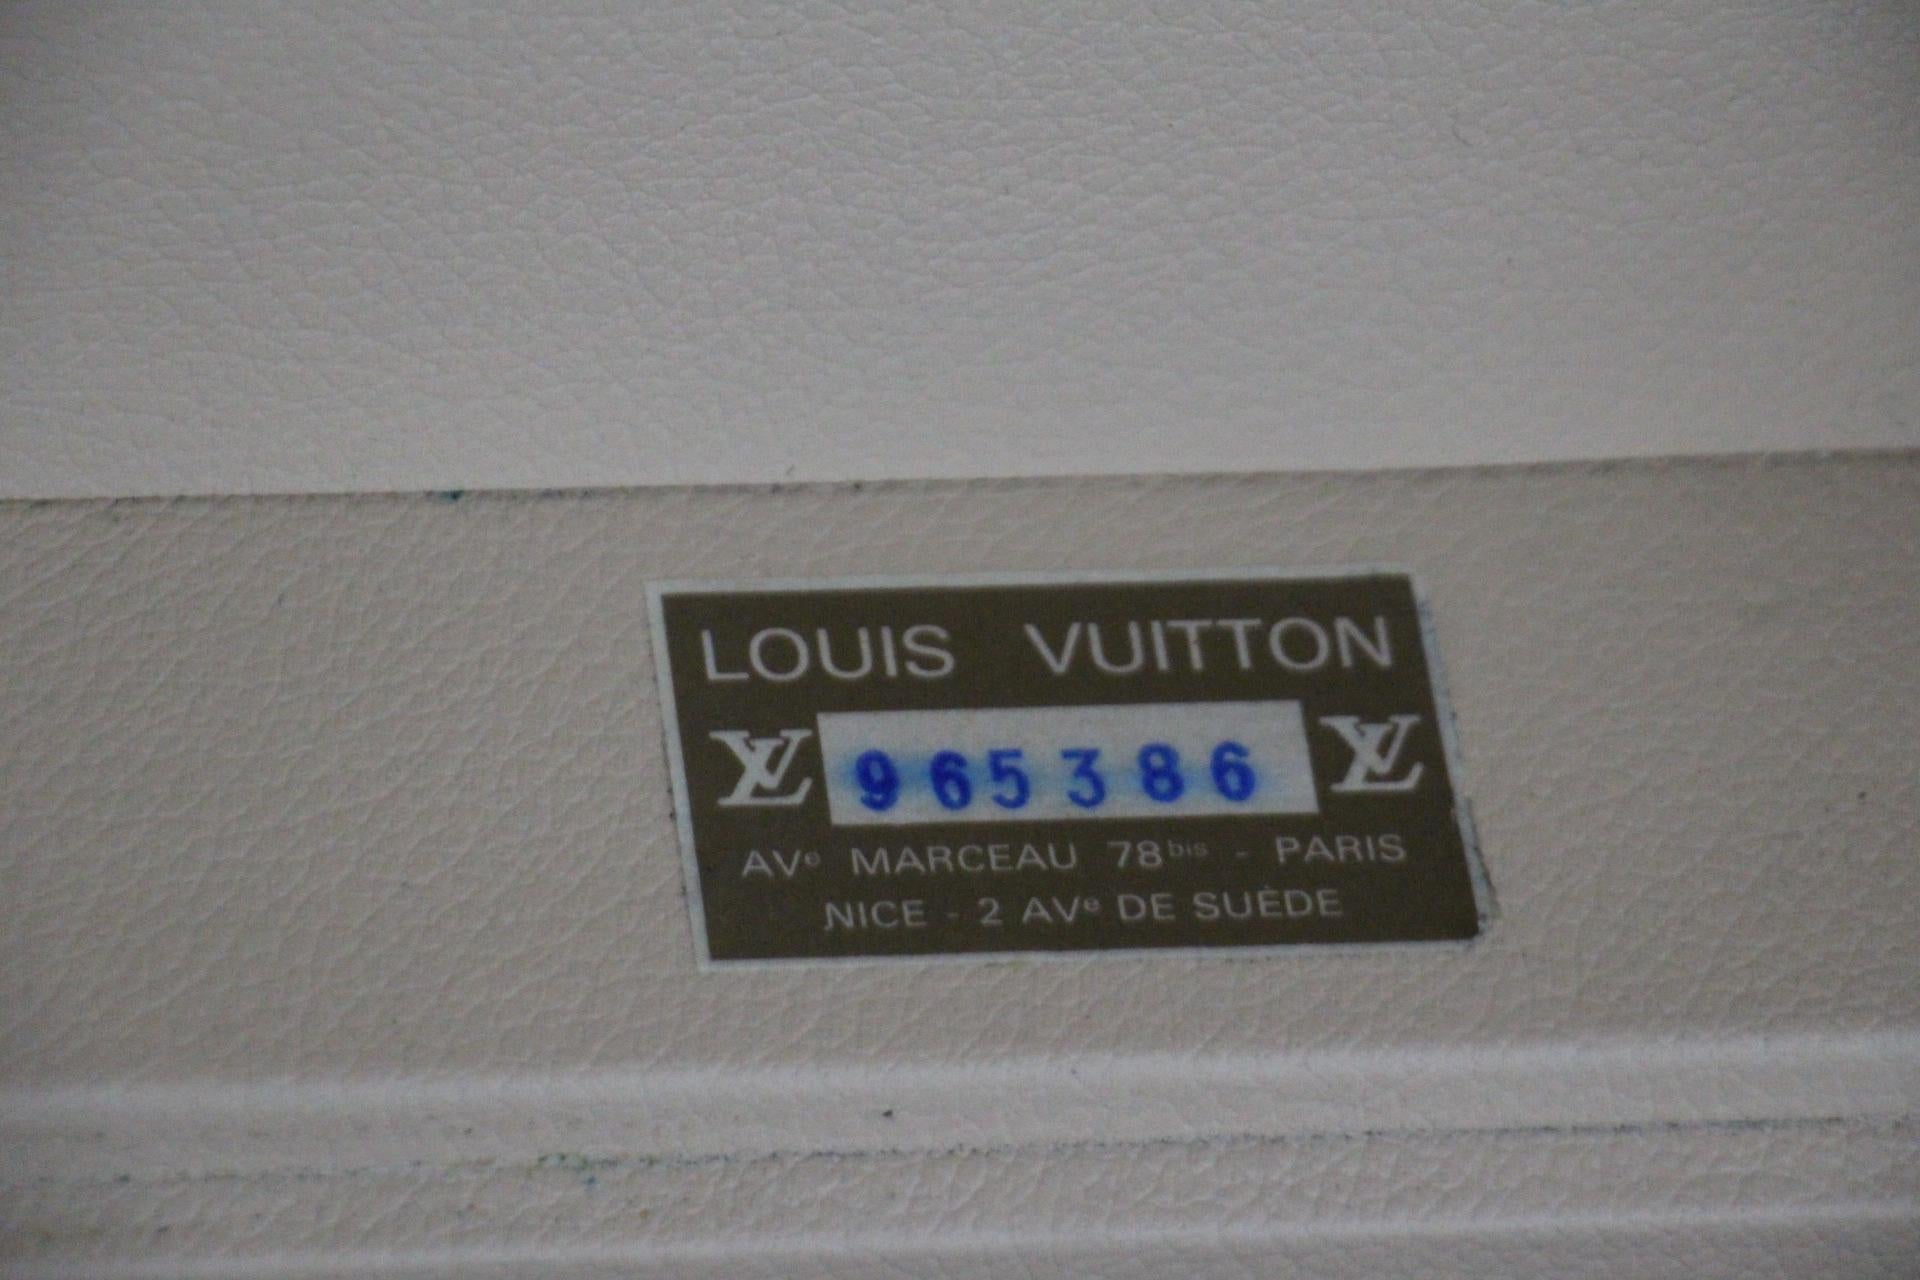  Valise Louis Vuitton, 55 Alzer valise Louis Vuitton, 55 cm 15